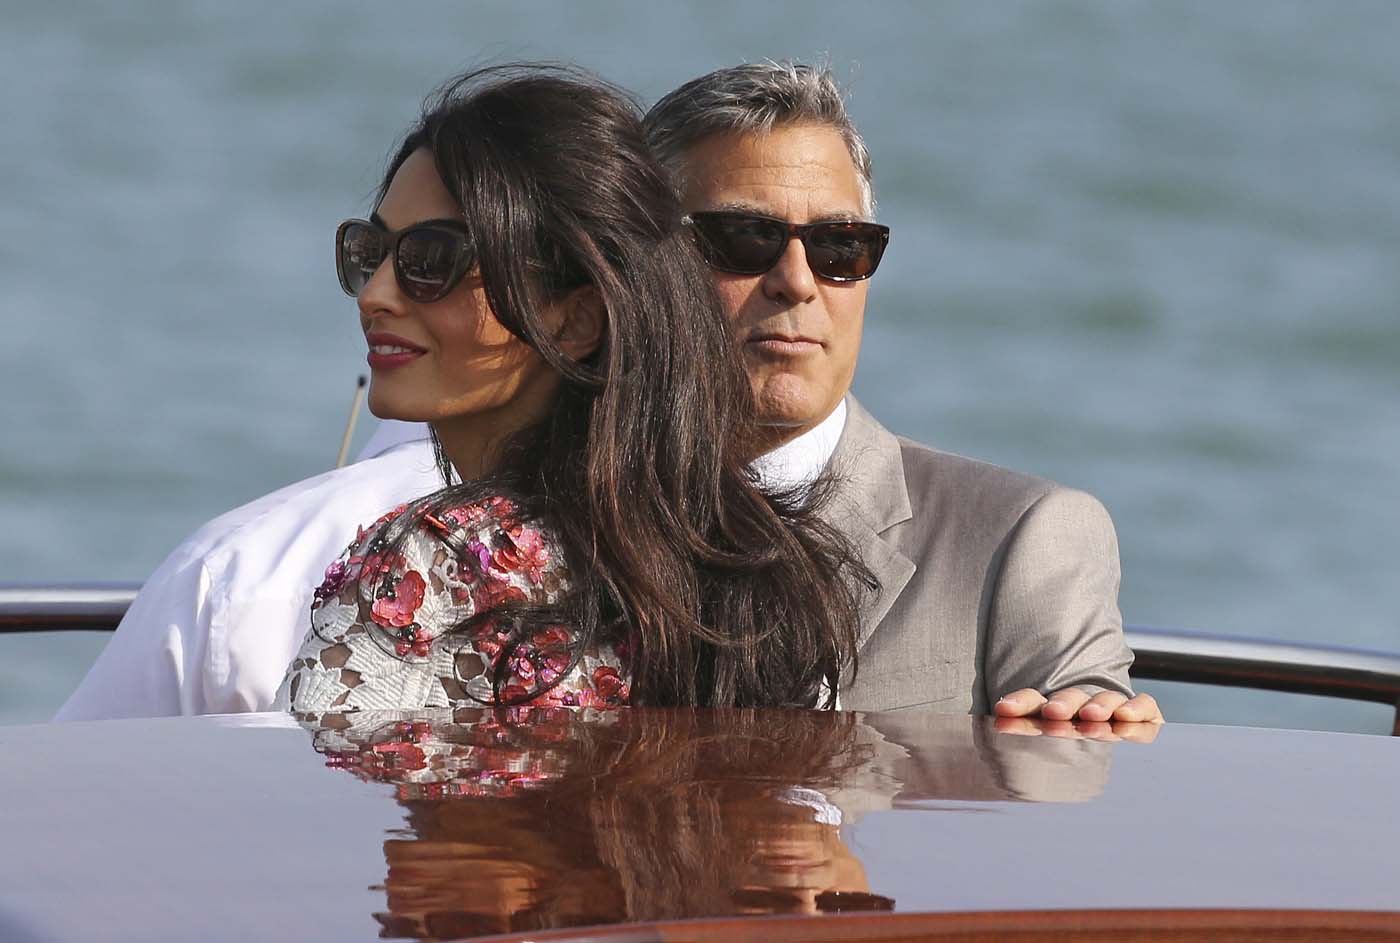 Parece que George Clooney será padre pronto